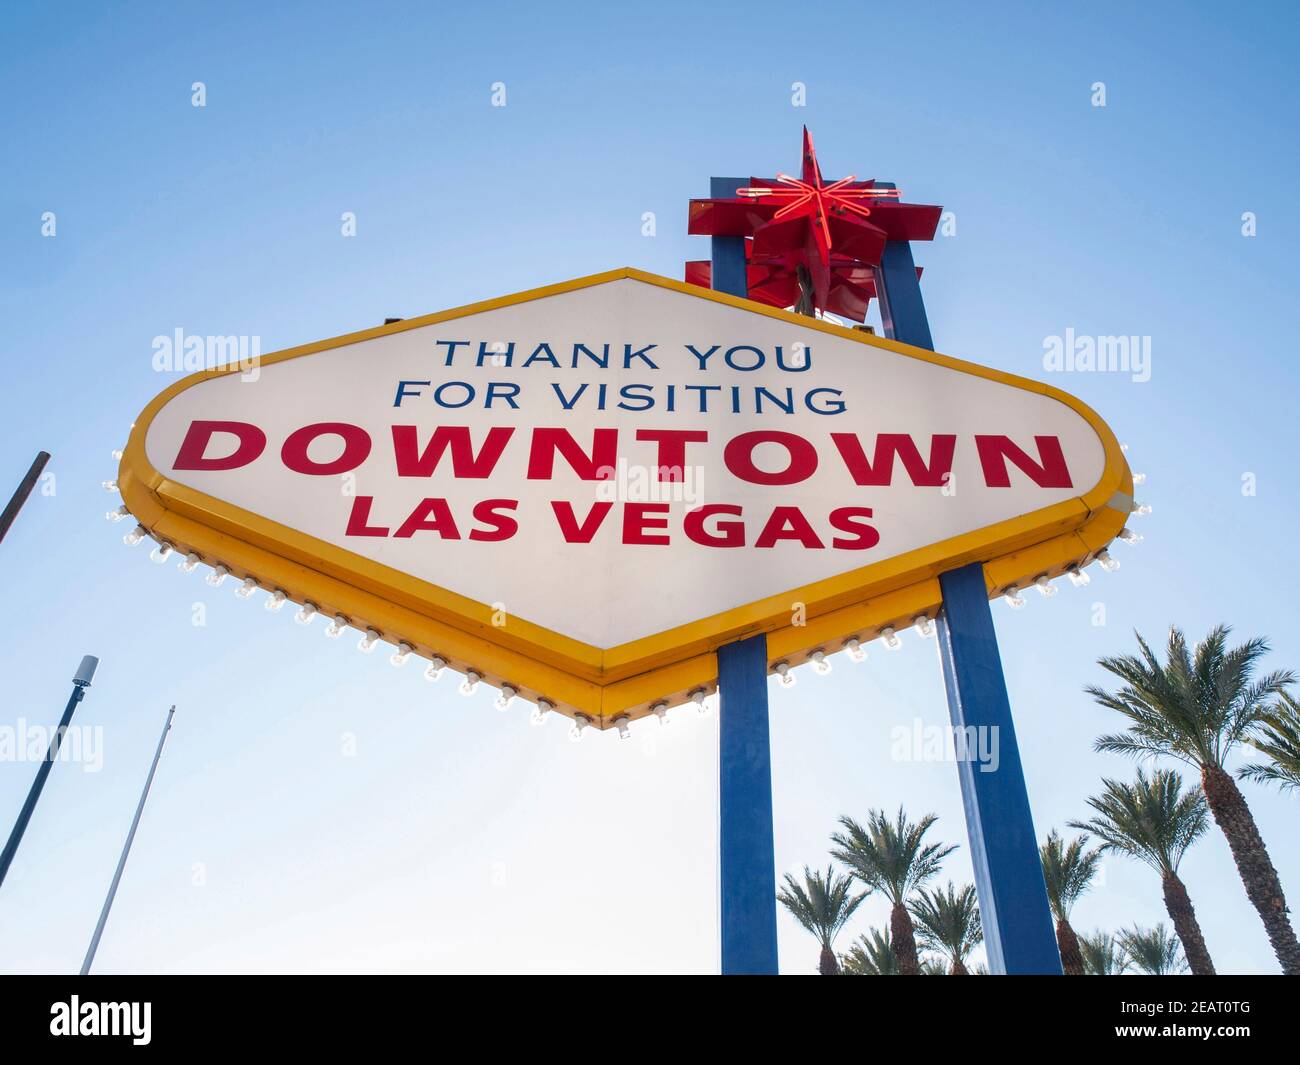 Vielen Dank für Ihren Besuch. Rückseite des Welcome to Fabulous Downtown Las Vegas-Schildes im Süden Nevadas. Stockfoto